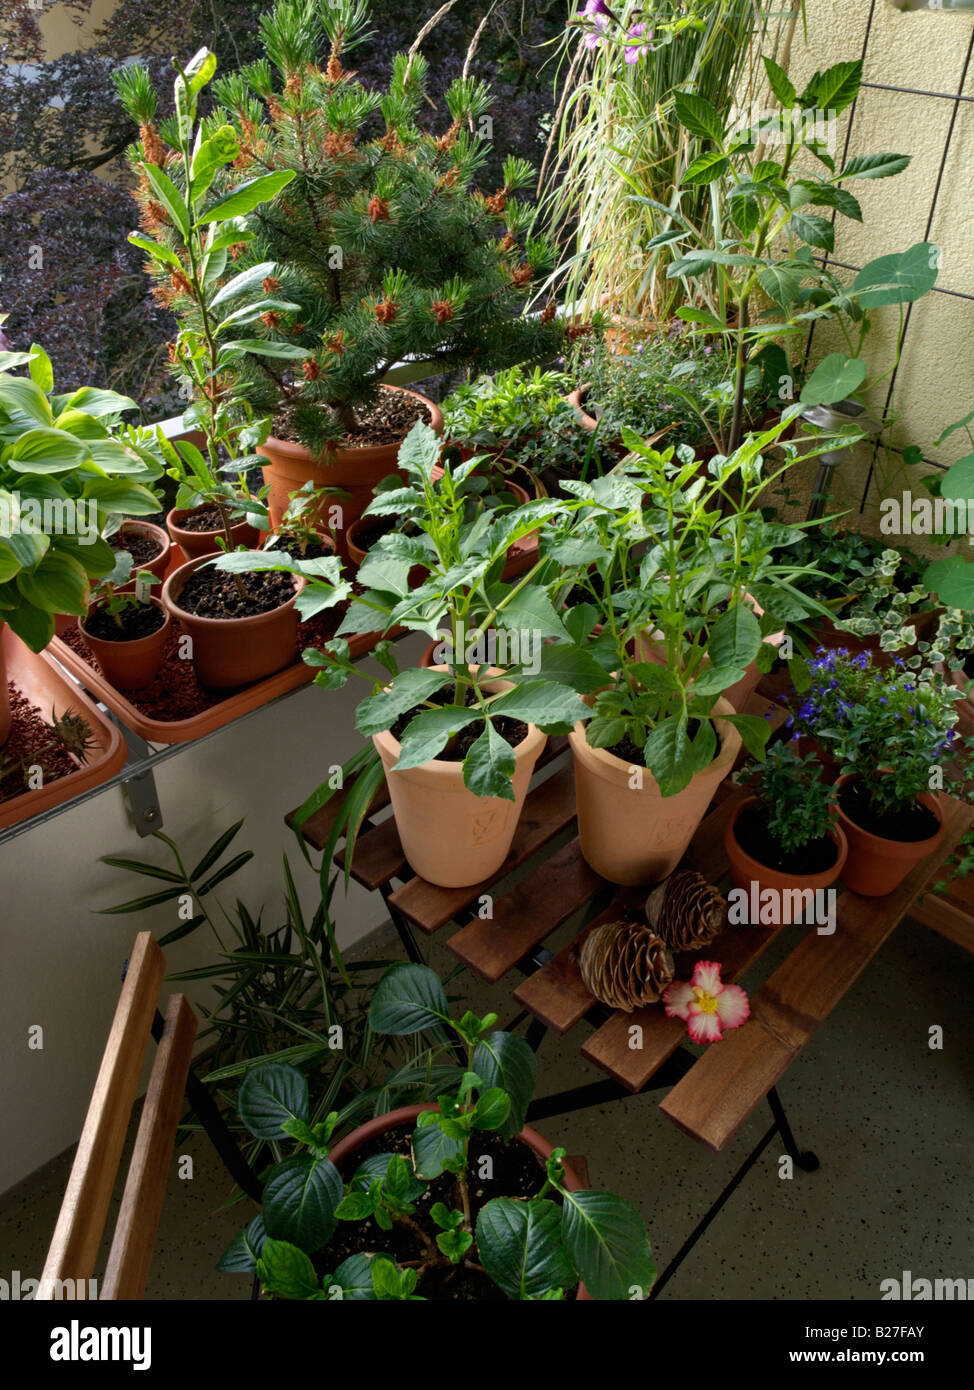 Balcón con numerosas plantas en macetas Foto de stock